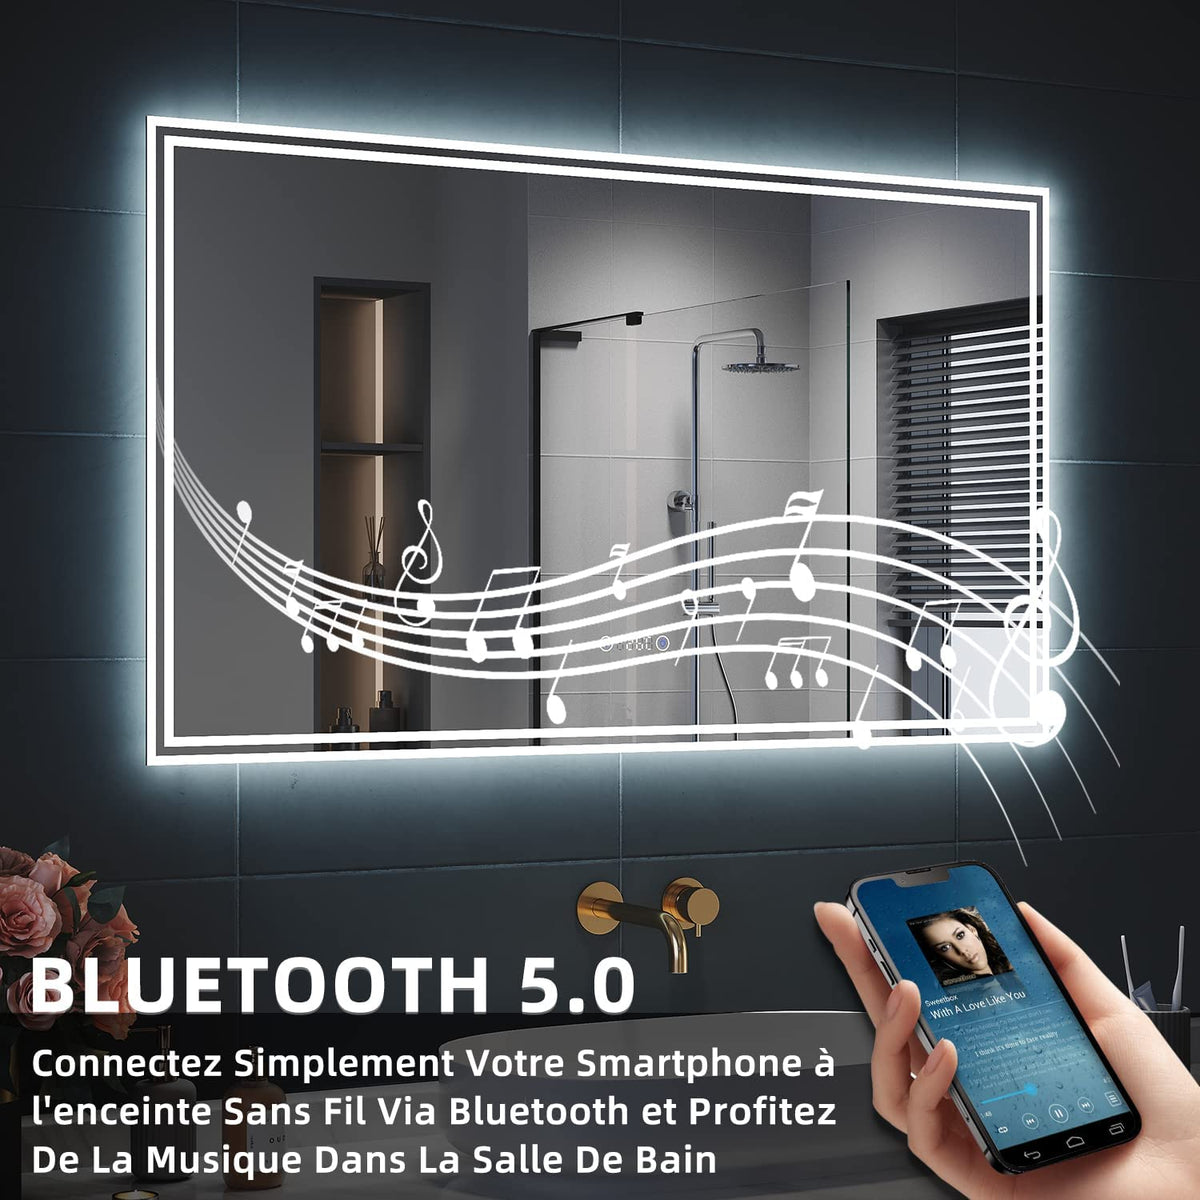 SIRHONA Miroir LED Salle de Bain Bluetooth 120x70cm Miroir Lumineux Salle de Bain avec Eclairage Intégré, Anti-buée, Affichage de L'heure et Température